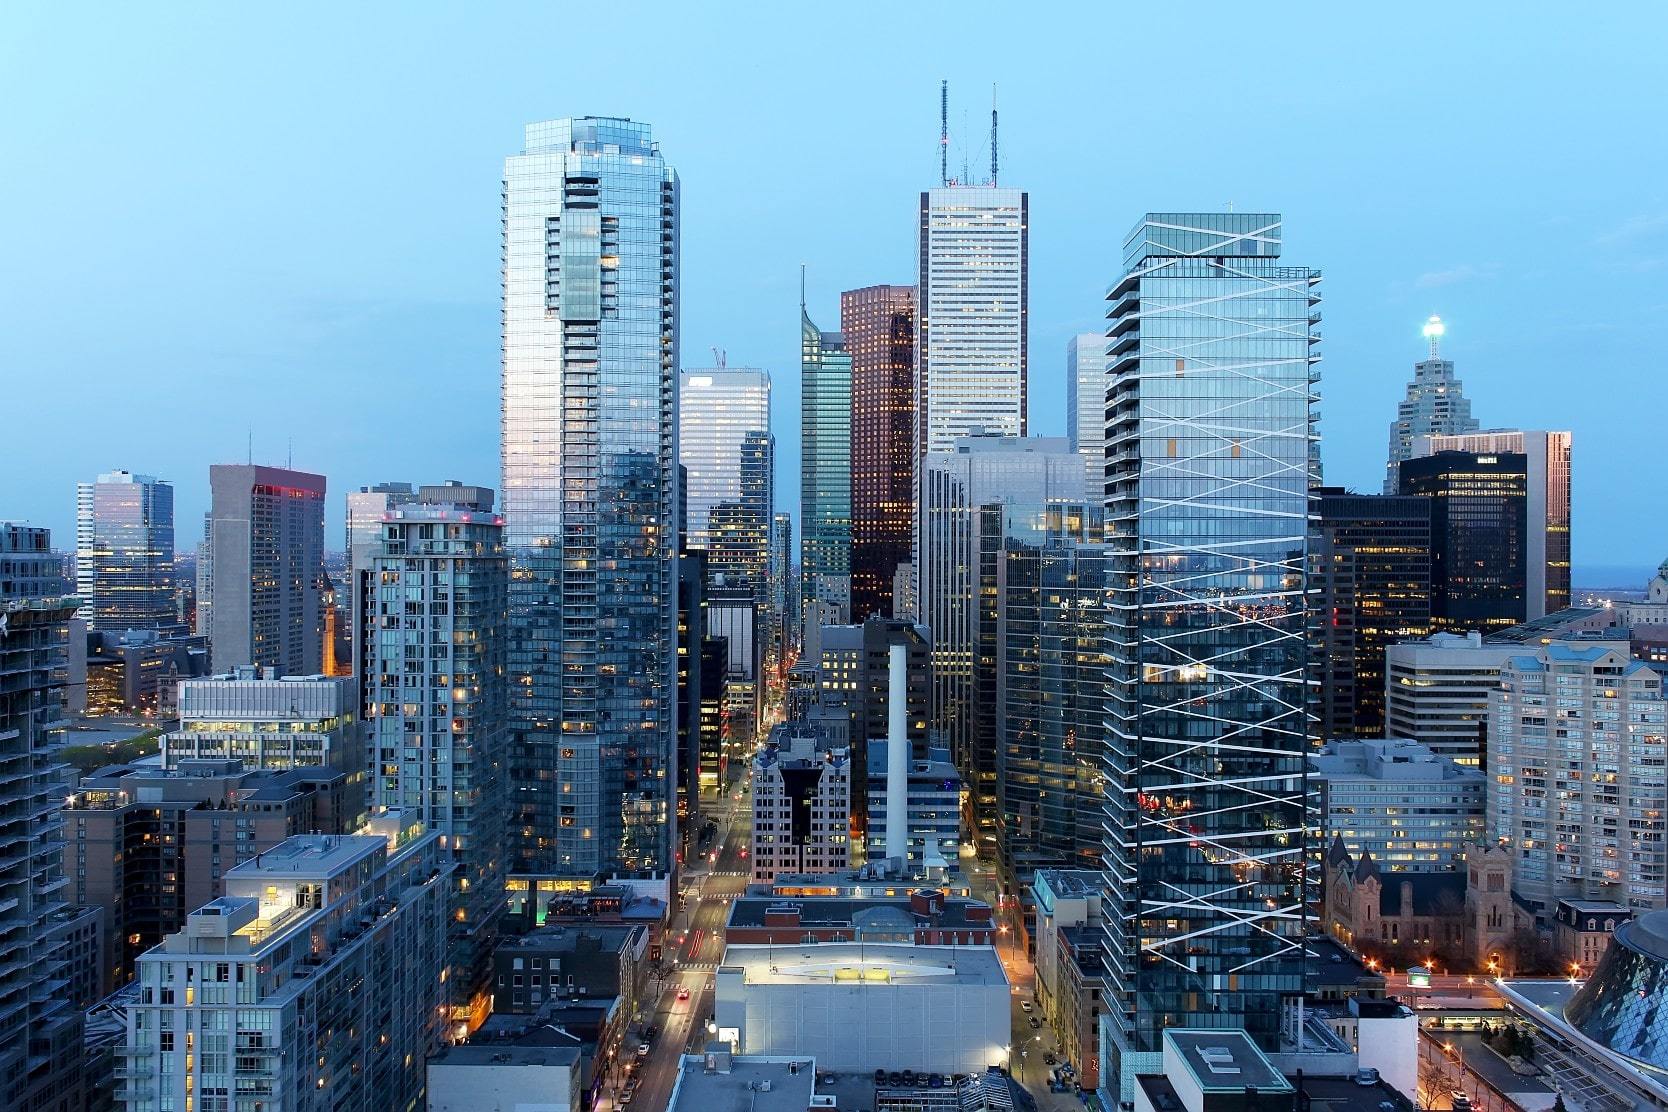 Toronto condos and skyscrapers against a blue sky